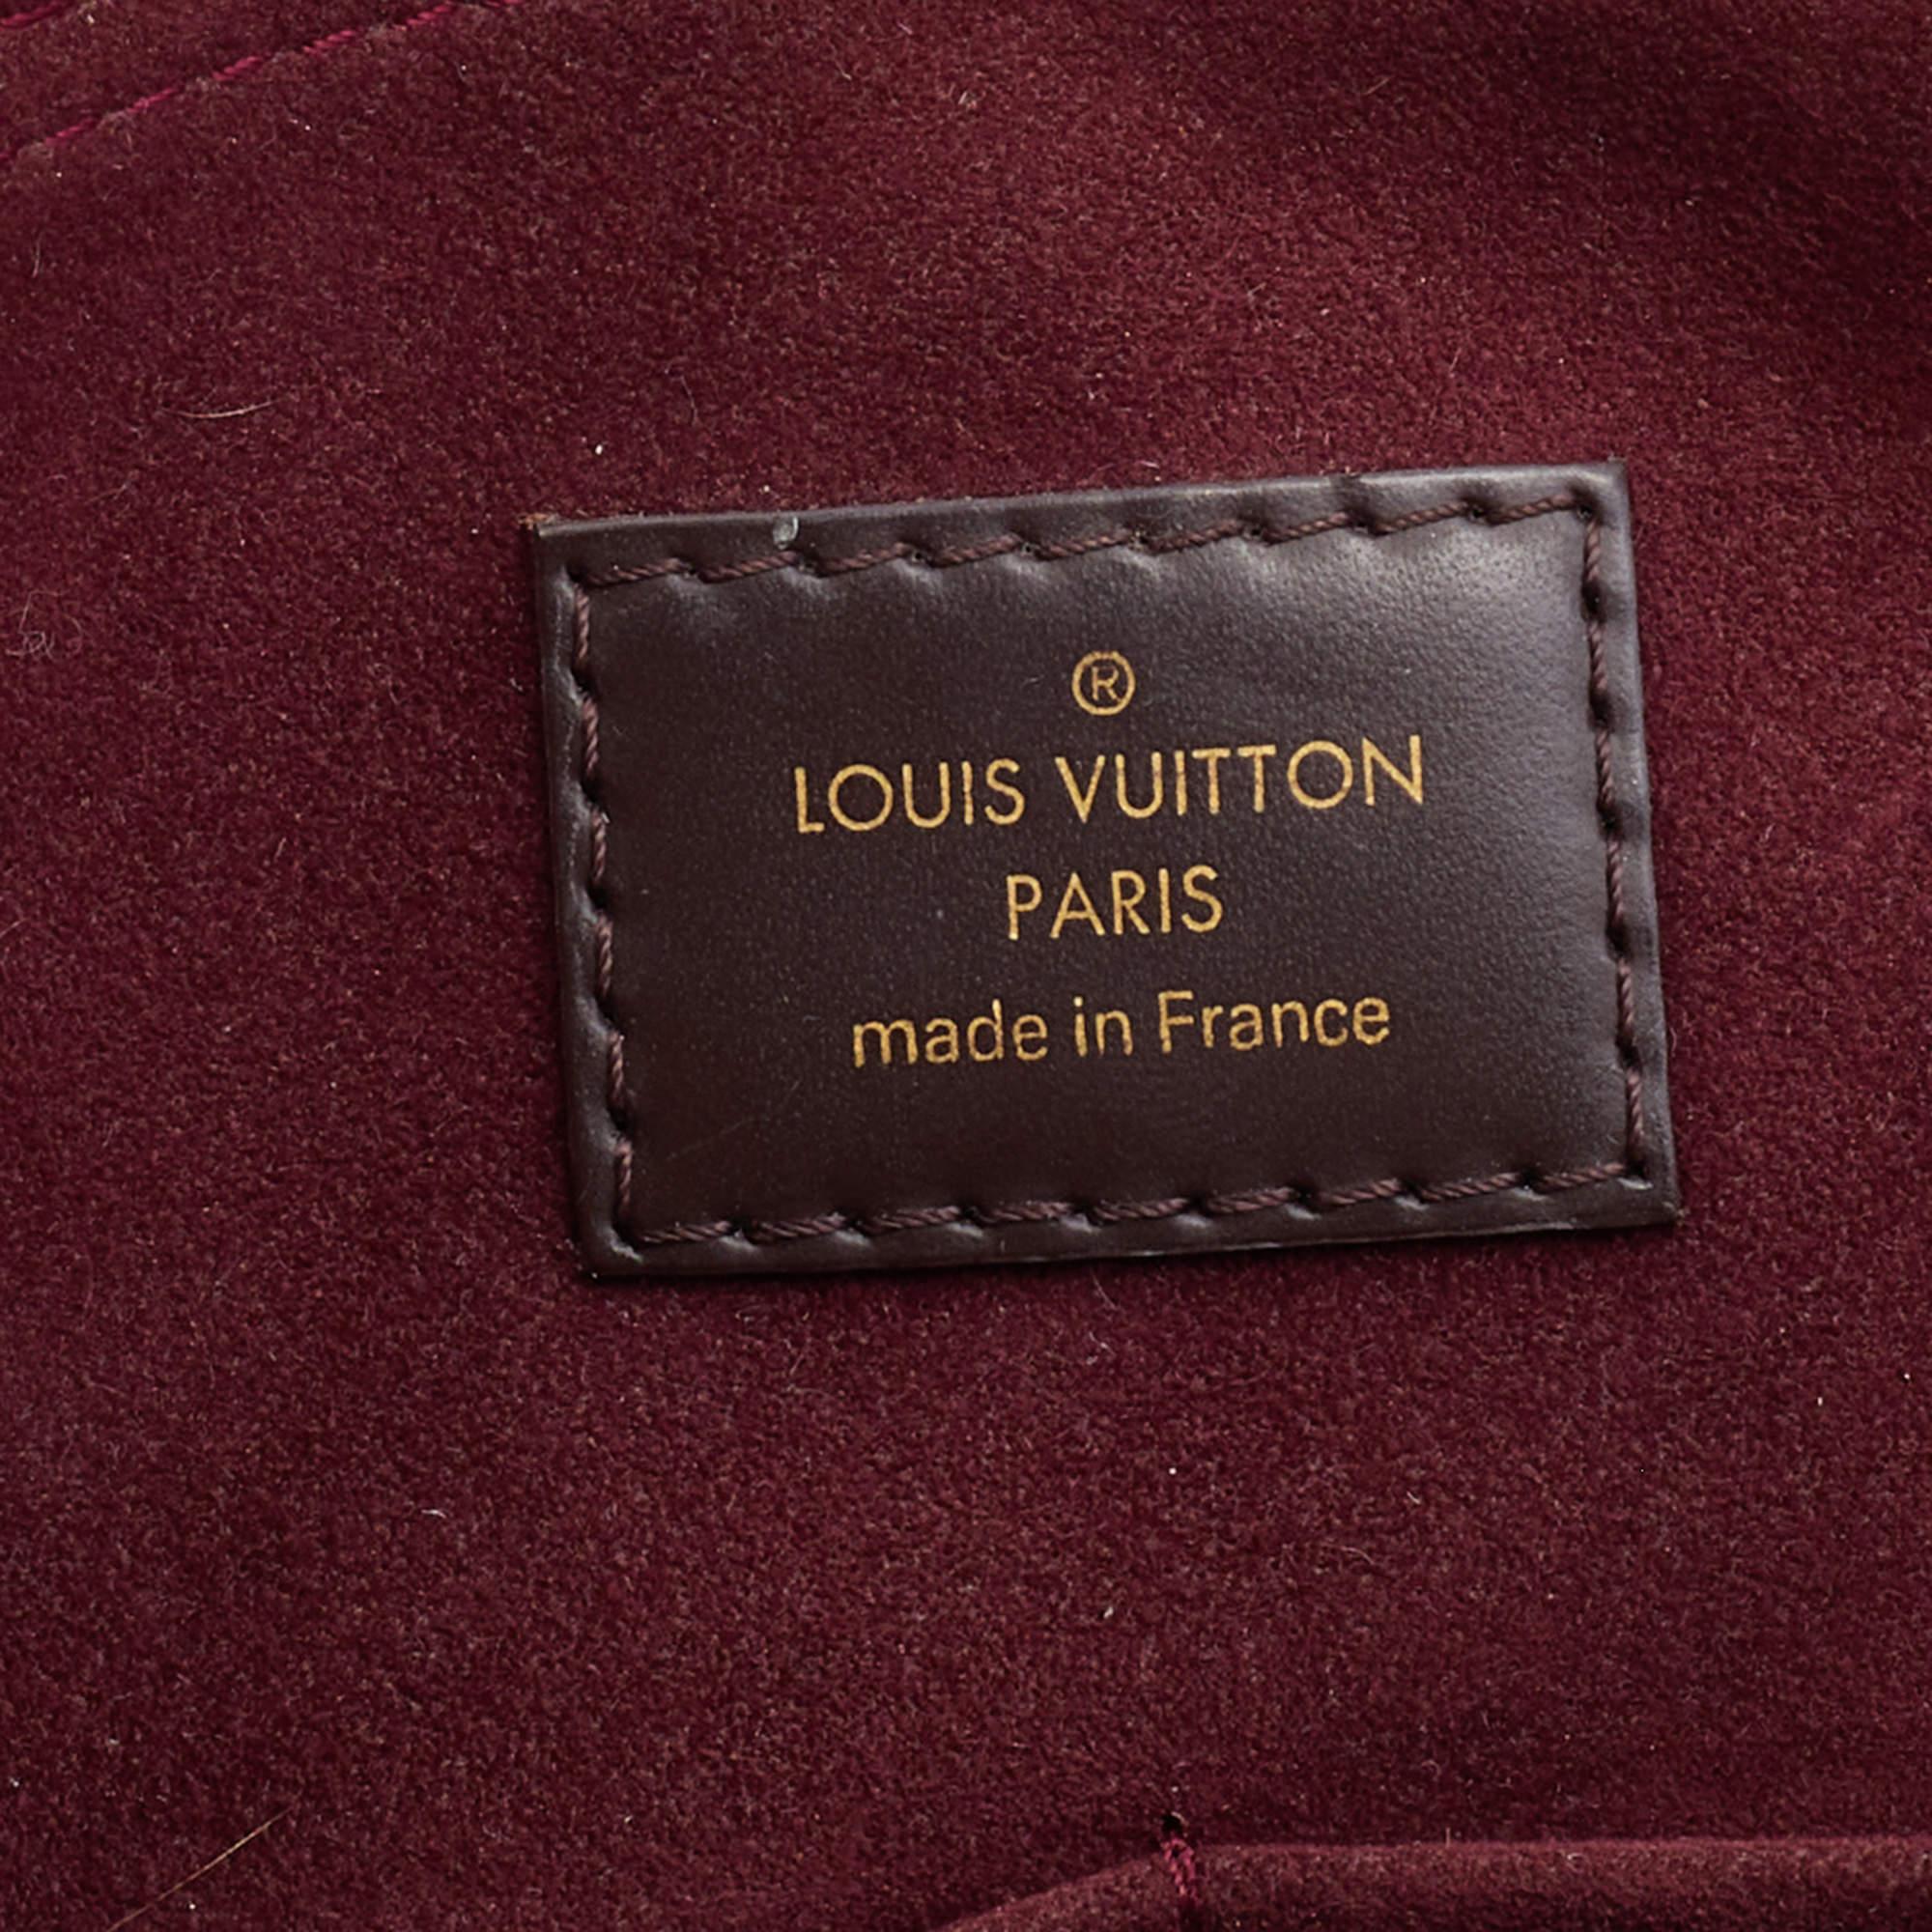 Louis Vuitton Bordeaux Damier Ebene Canvas and Taurillon Leather Normandy Bag 2